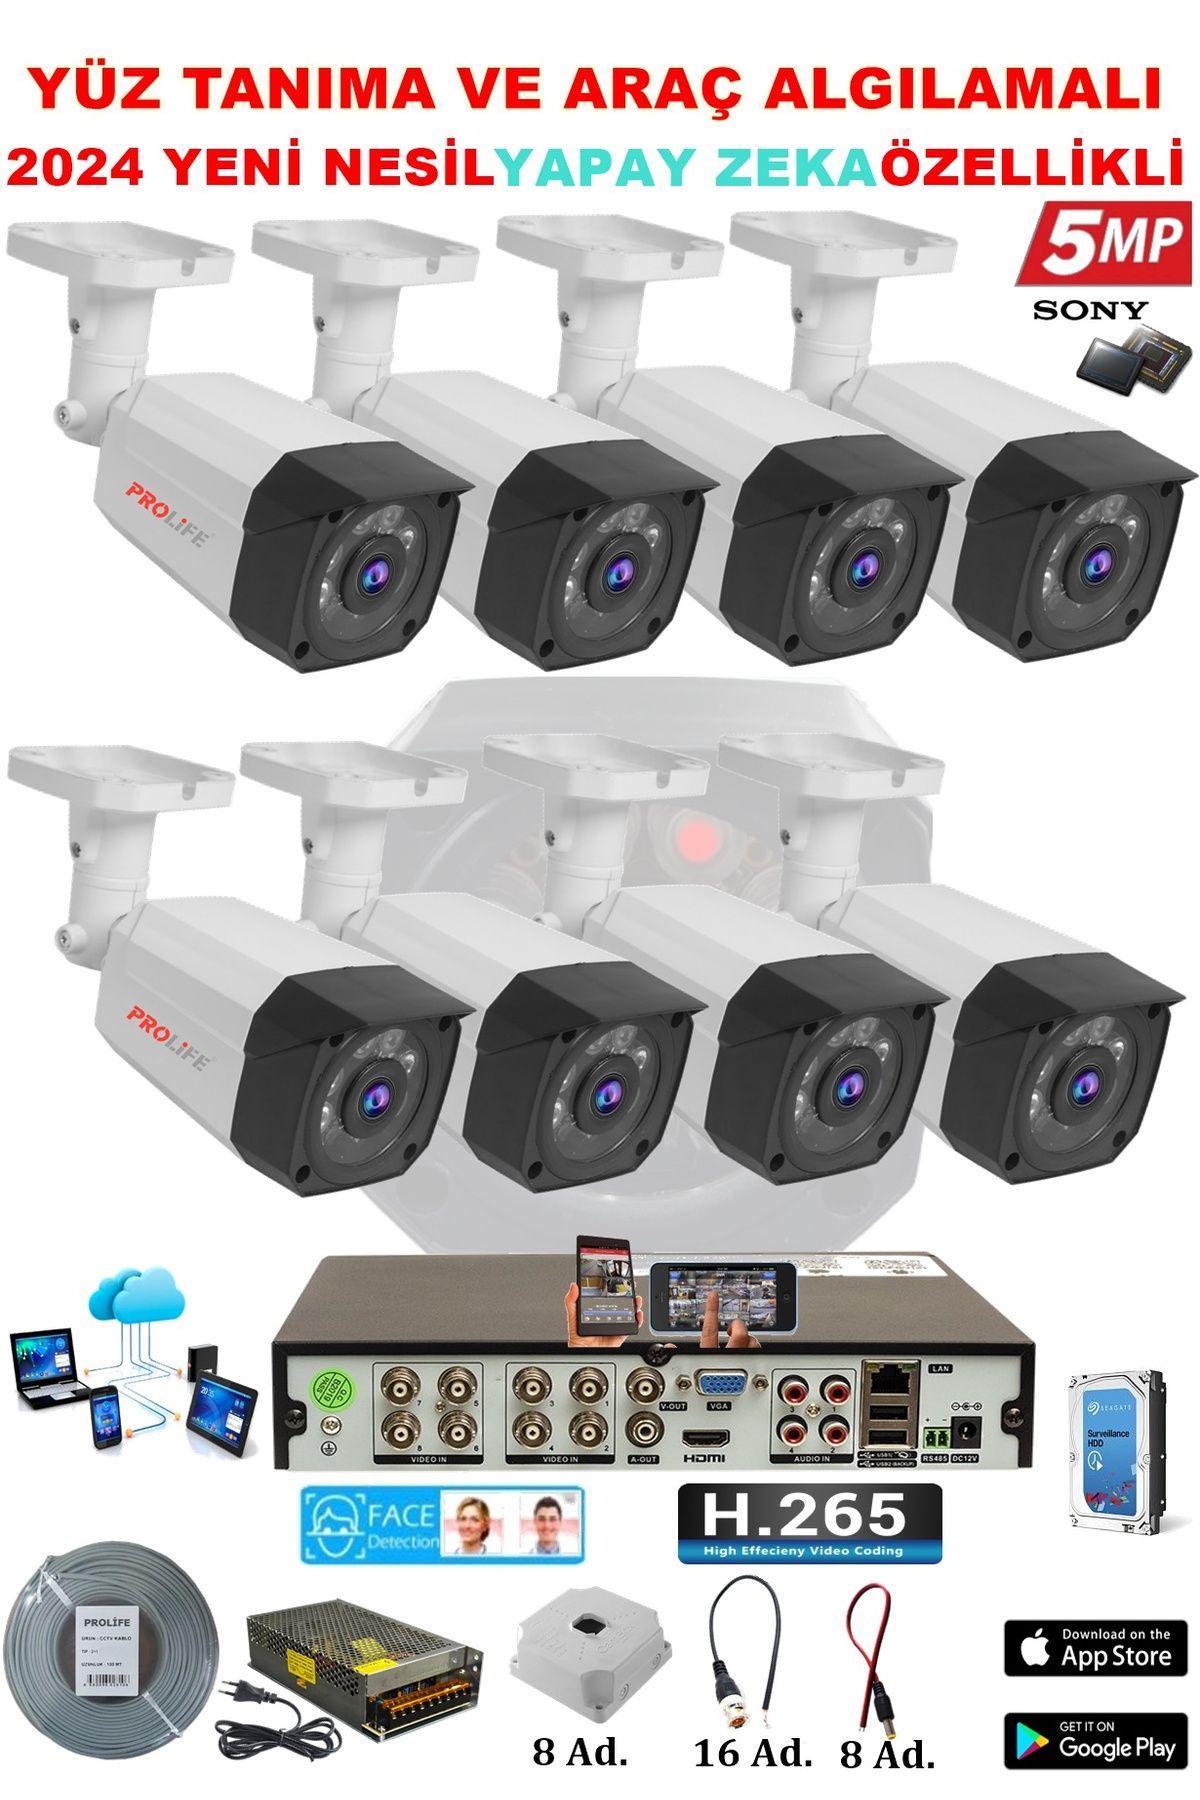 PROLİFE 8 Kameralı Yapay Zeka Özellikli Yüz Tanıma Ve Araç Algılamalı 5 Mp Güvenlik Kamerası Seti